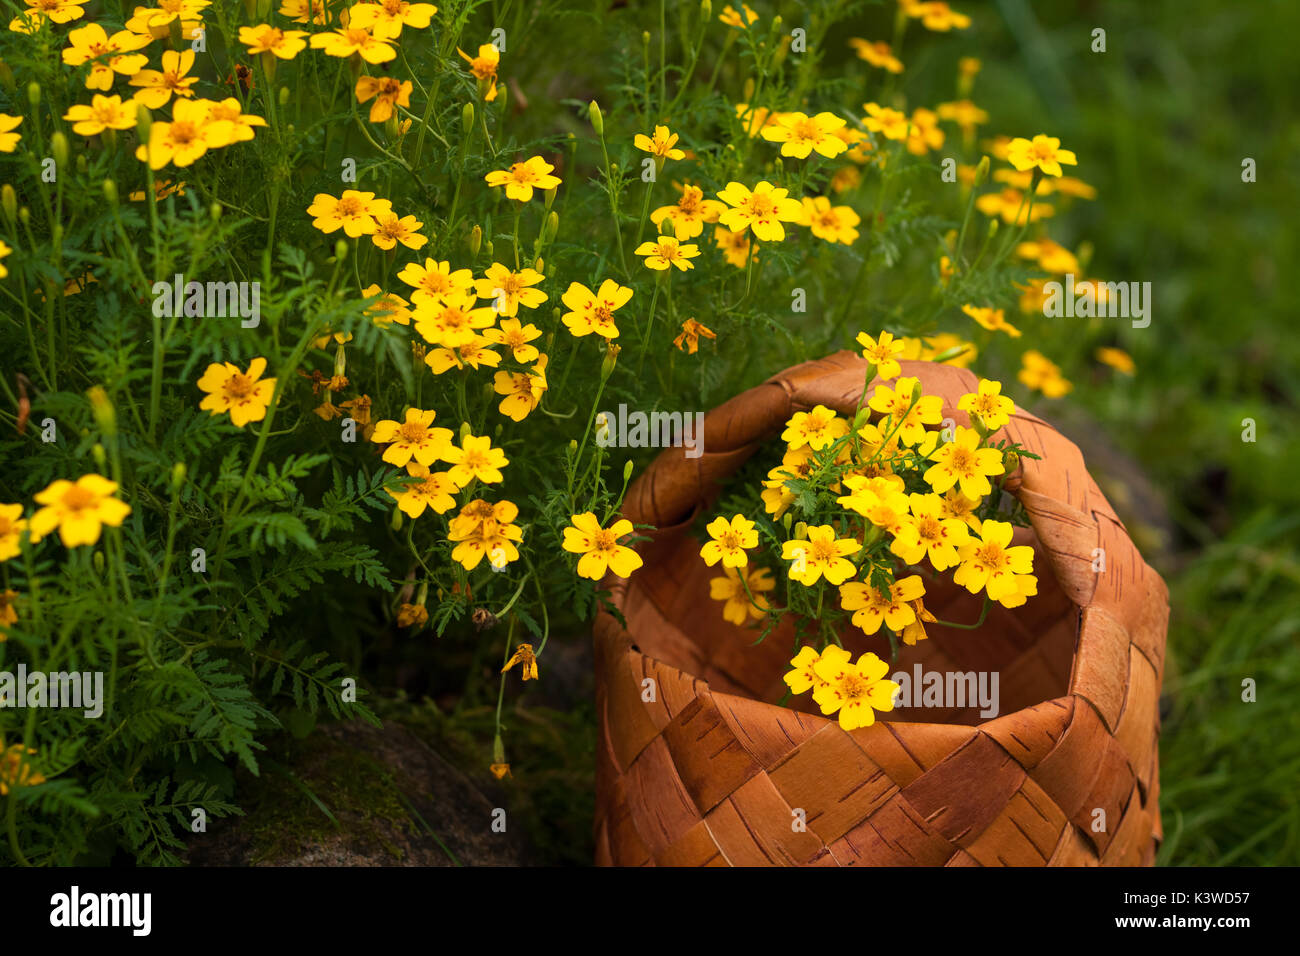 Garten Blumen tagetes tenuifolia. Weidenkorb mit gelben Blumen tagetes tenoifoliya Nahaufnahme. Stockfoto